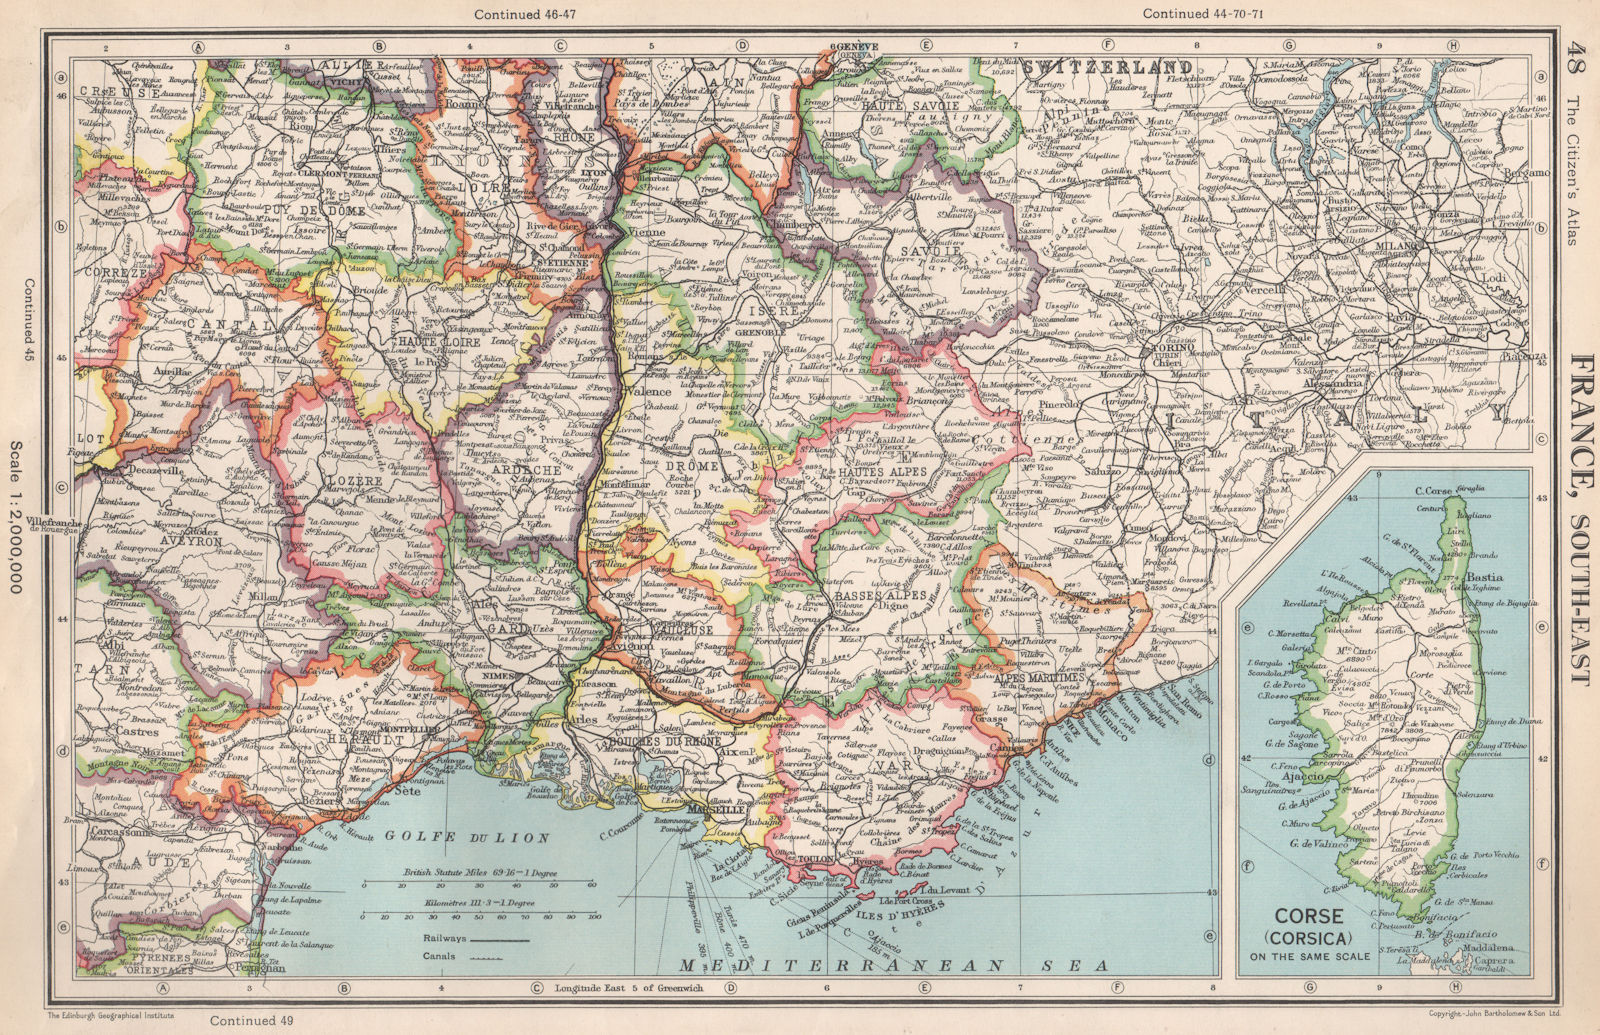 FRANCE SOUTH-EAST. Departements. BARTHOLOMEW 1952 old vintage map plan chart